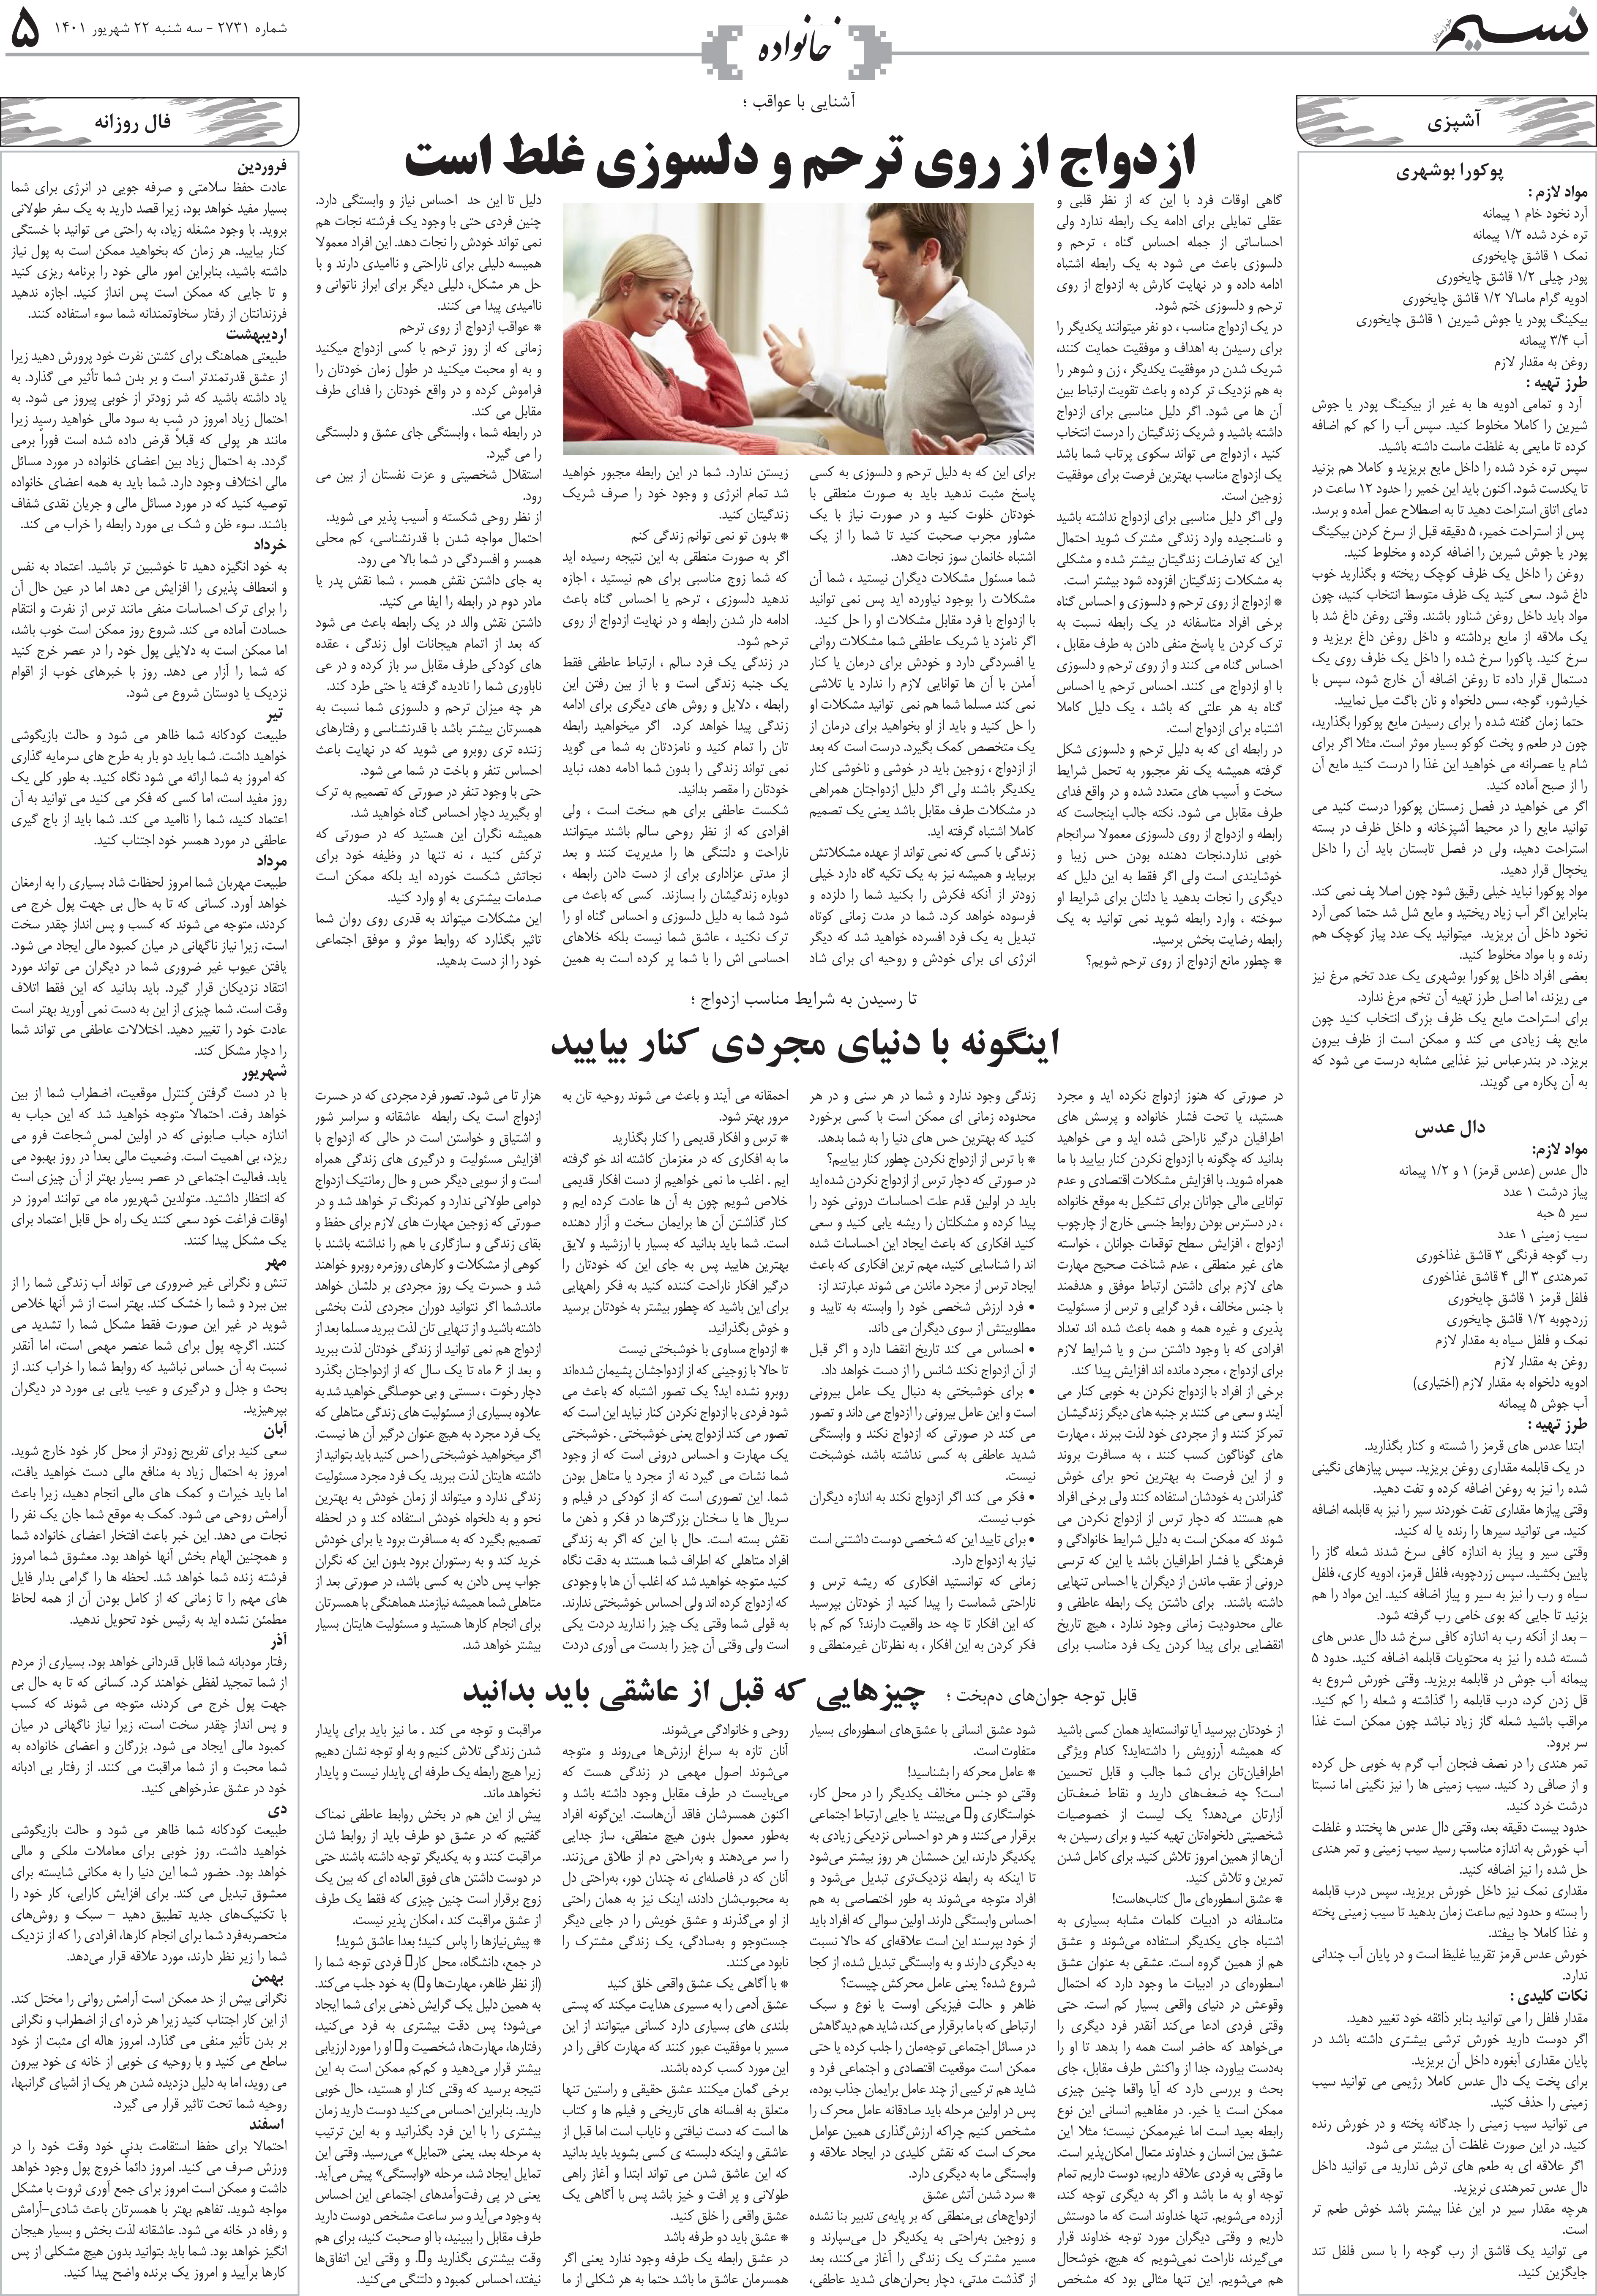 صفحه خانواده روزنامه نسیم شماره 2731